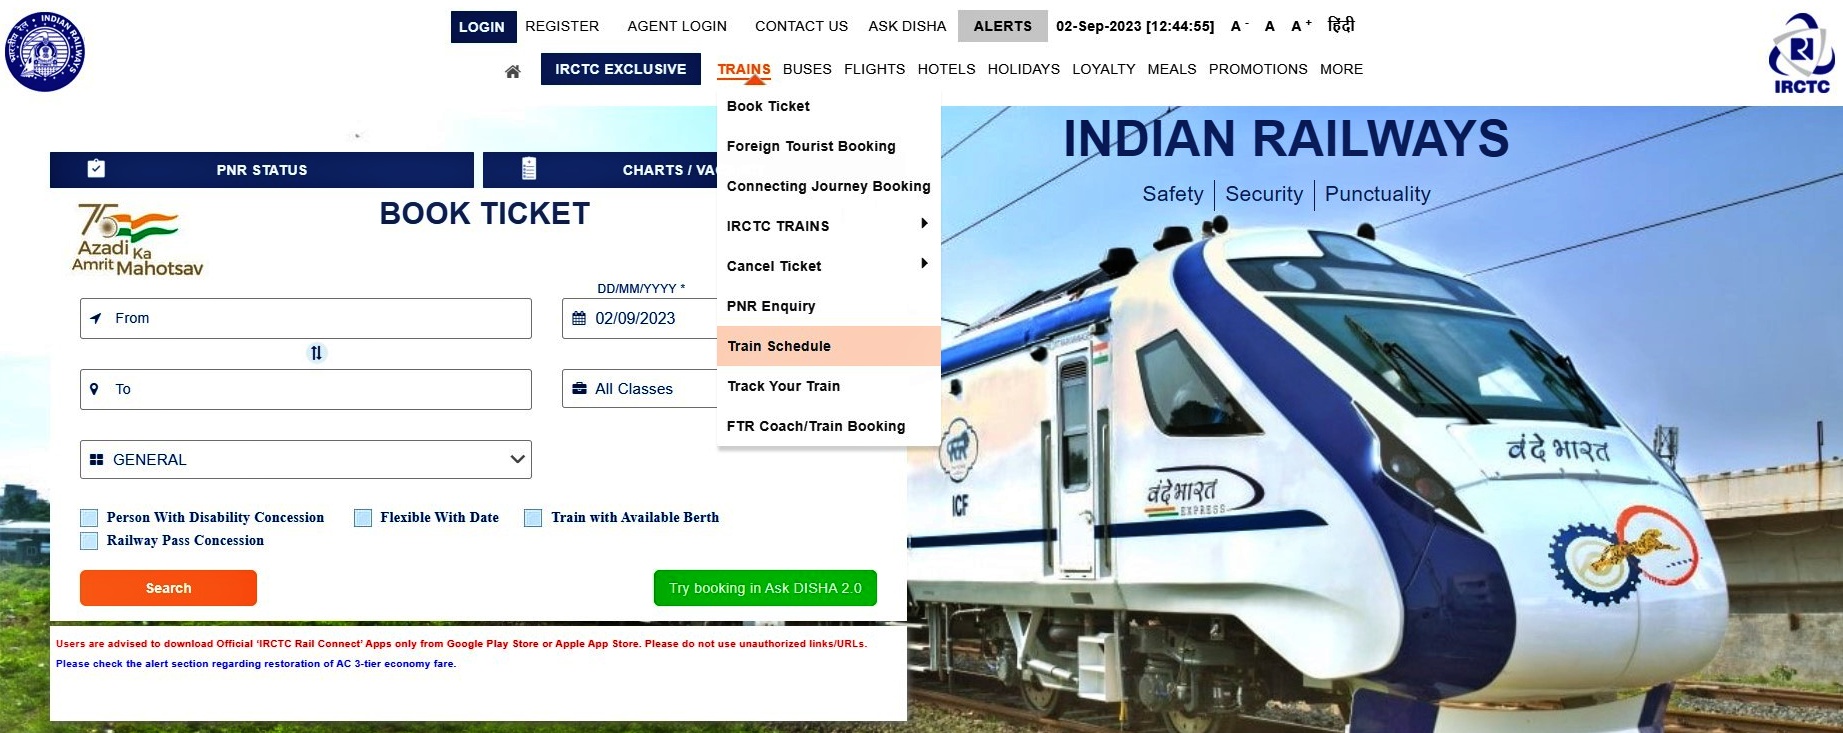 IRCTC trains schedule